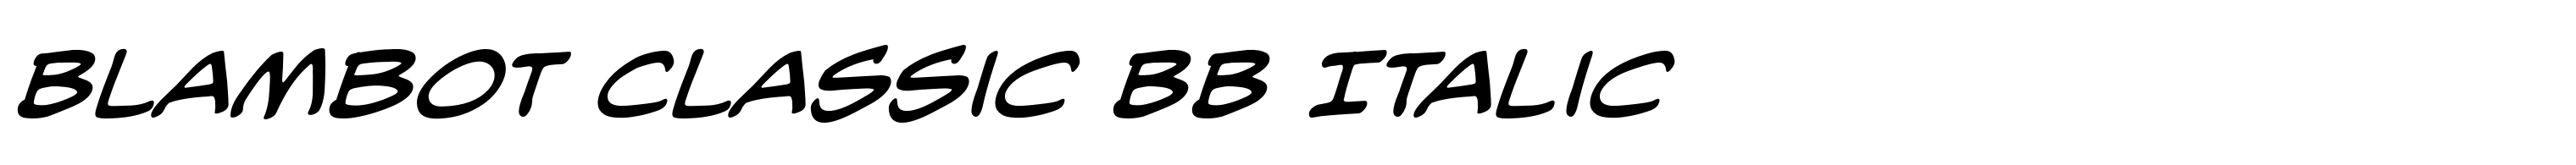 Blambot Classic BB Italic